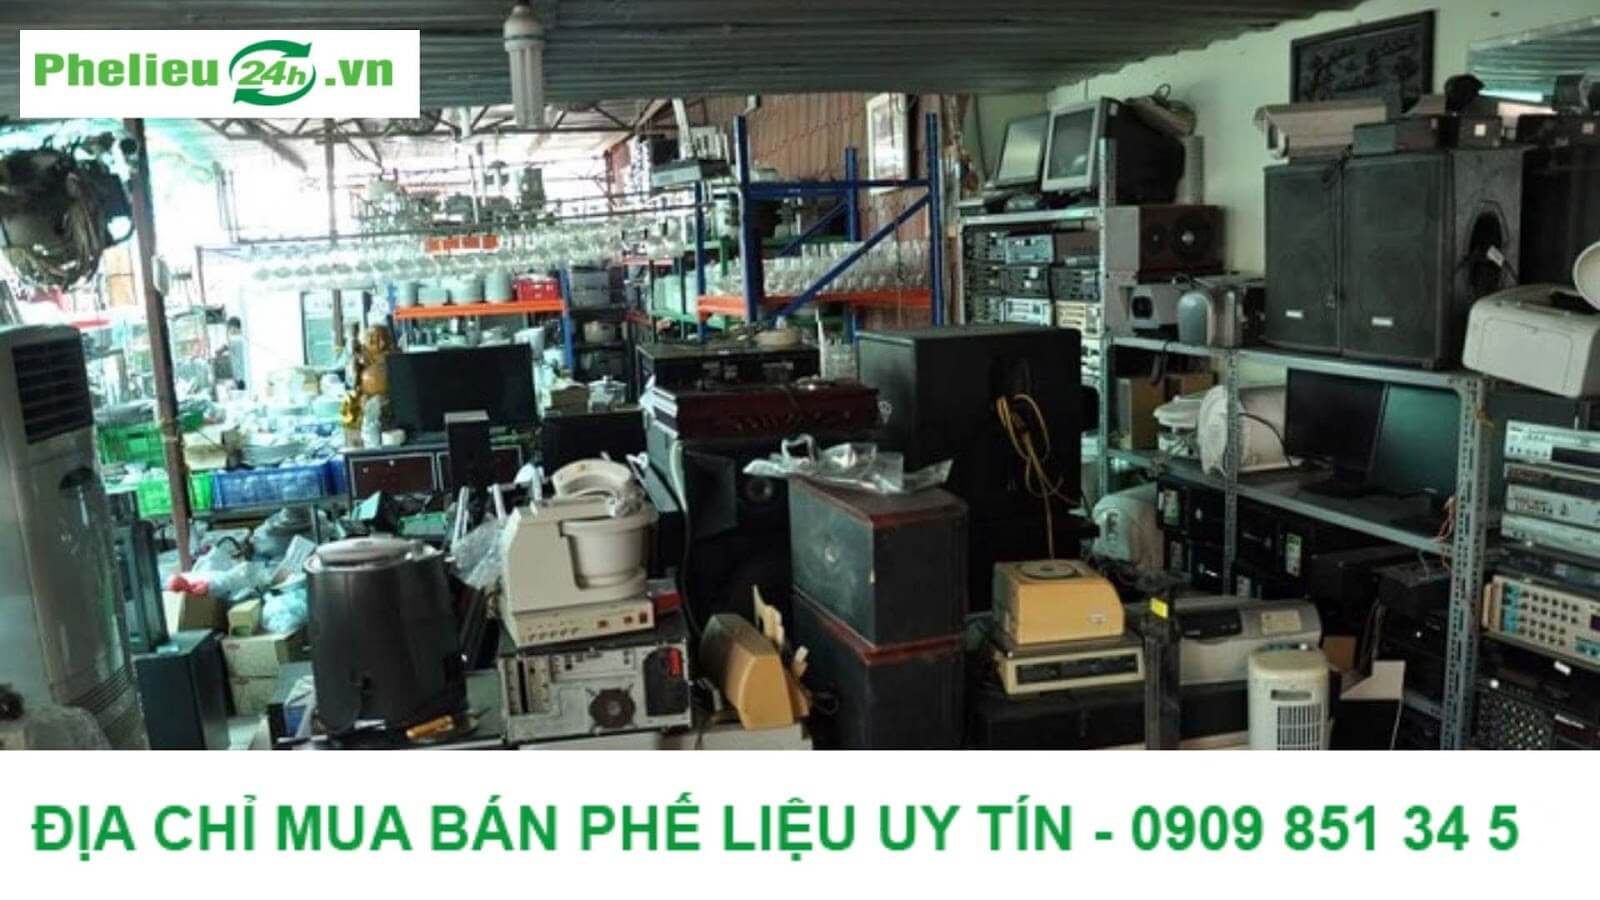 Các địa chỉ uy tín để thu mua bo mạch điện tử tại Việt Nam?